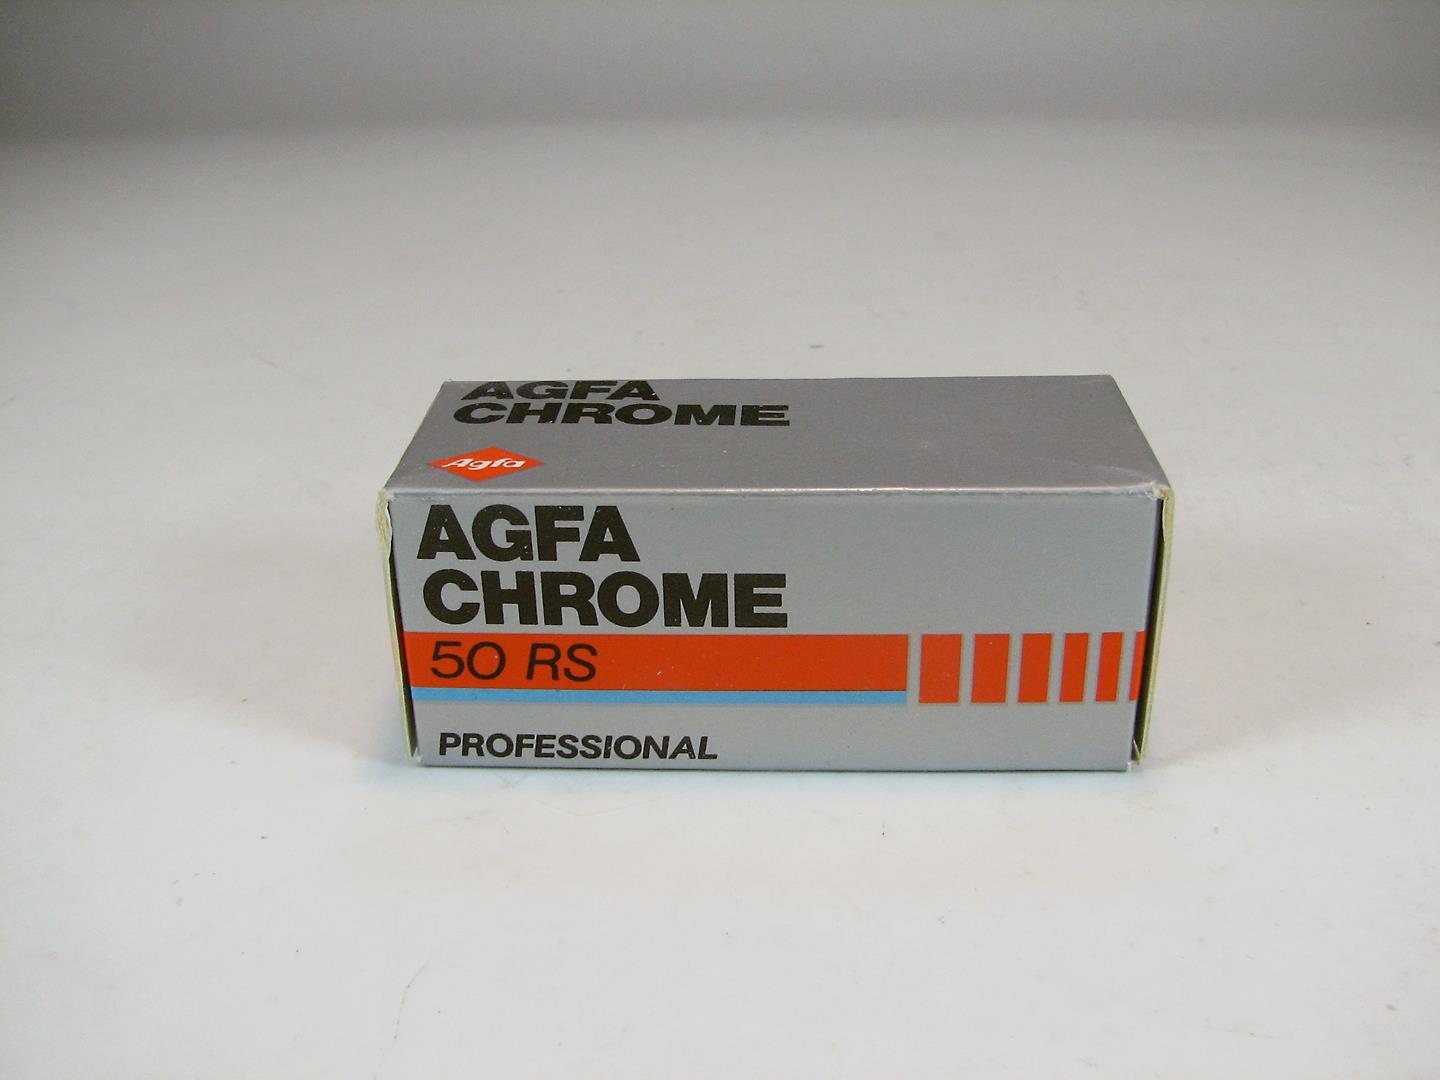 نگاتیو اسلاید AGFA CHROME120 انقضا 10.1989